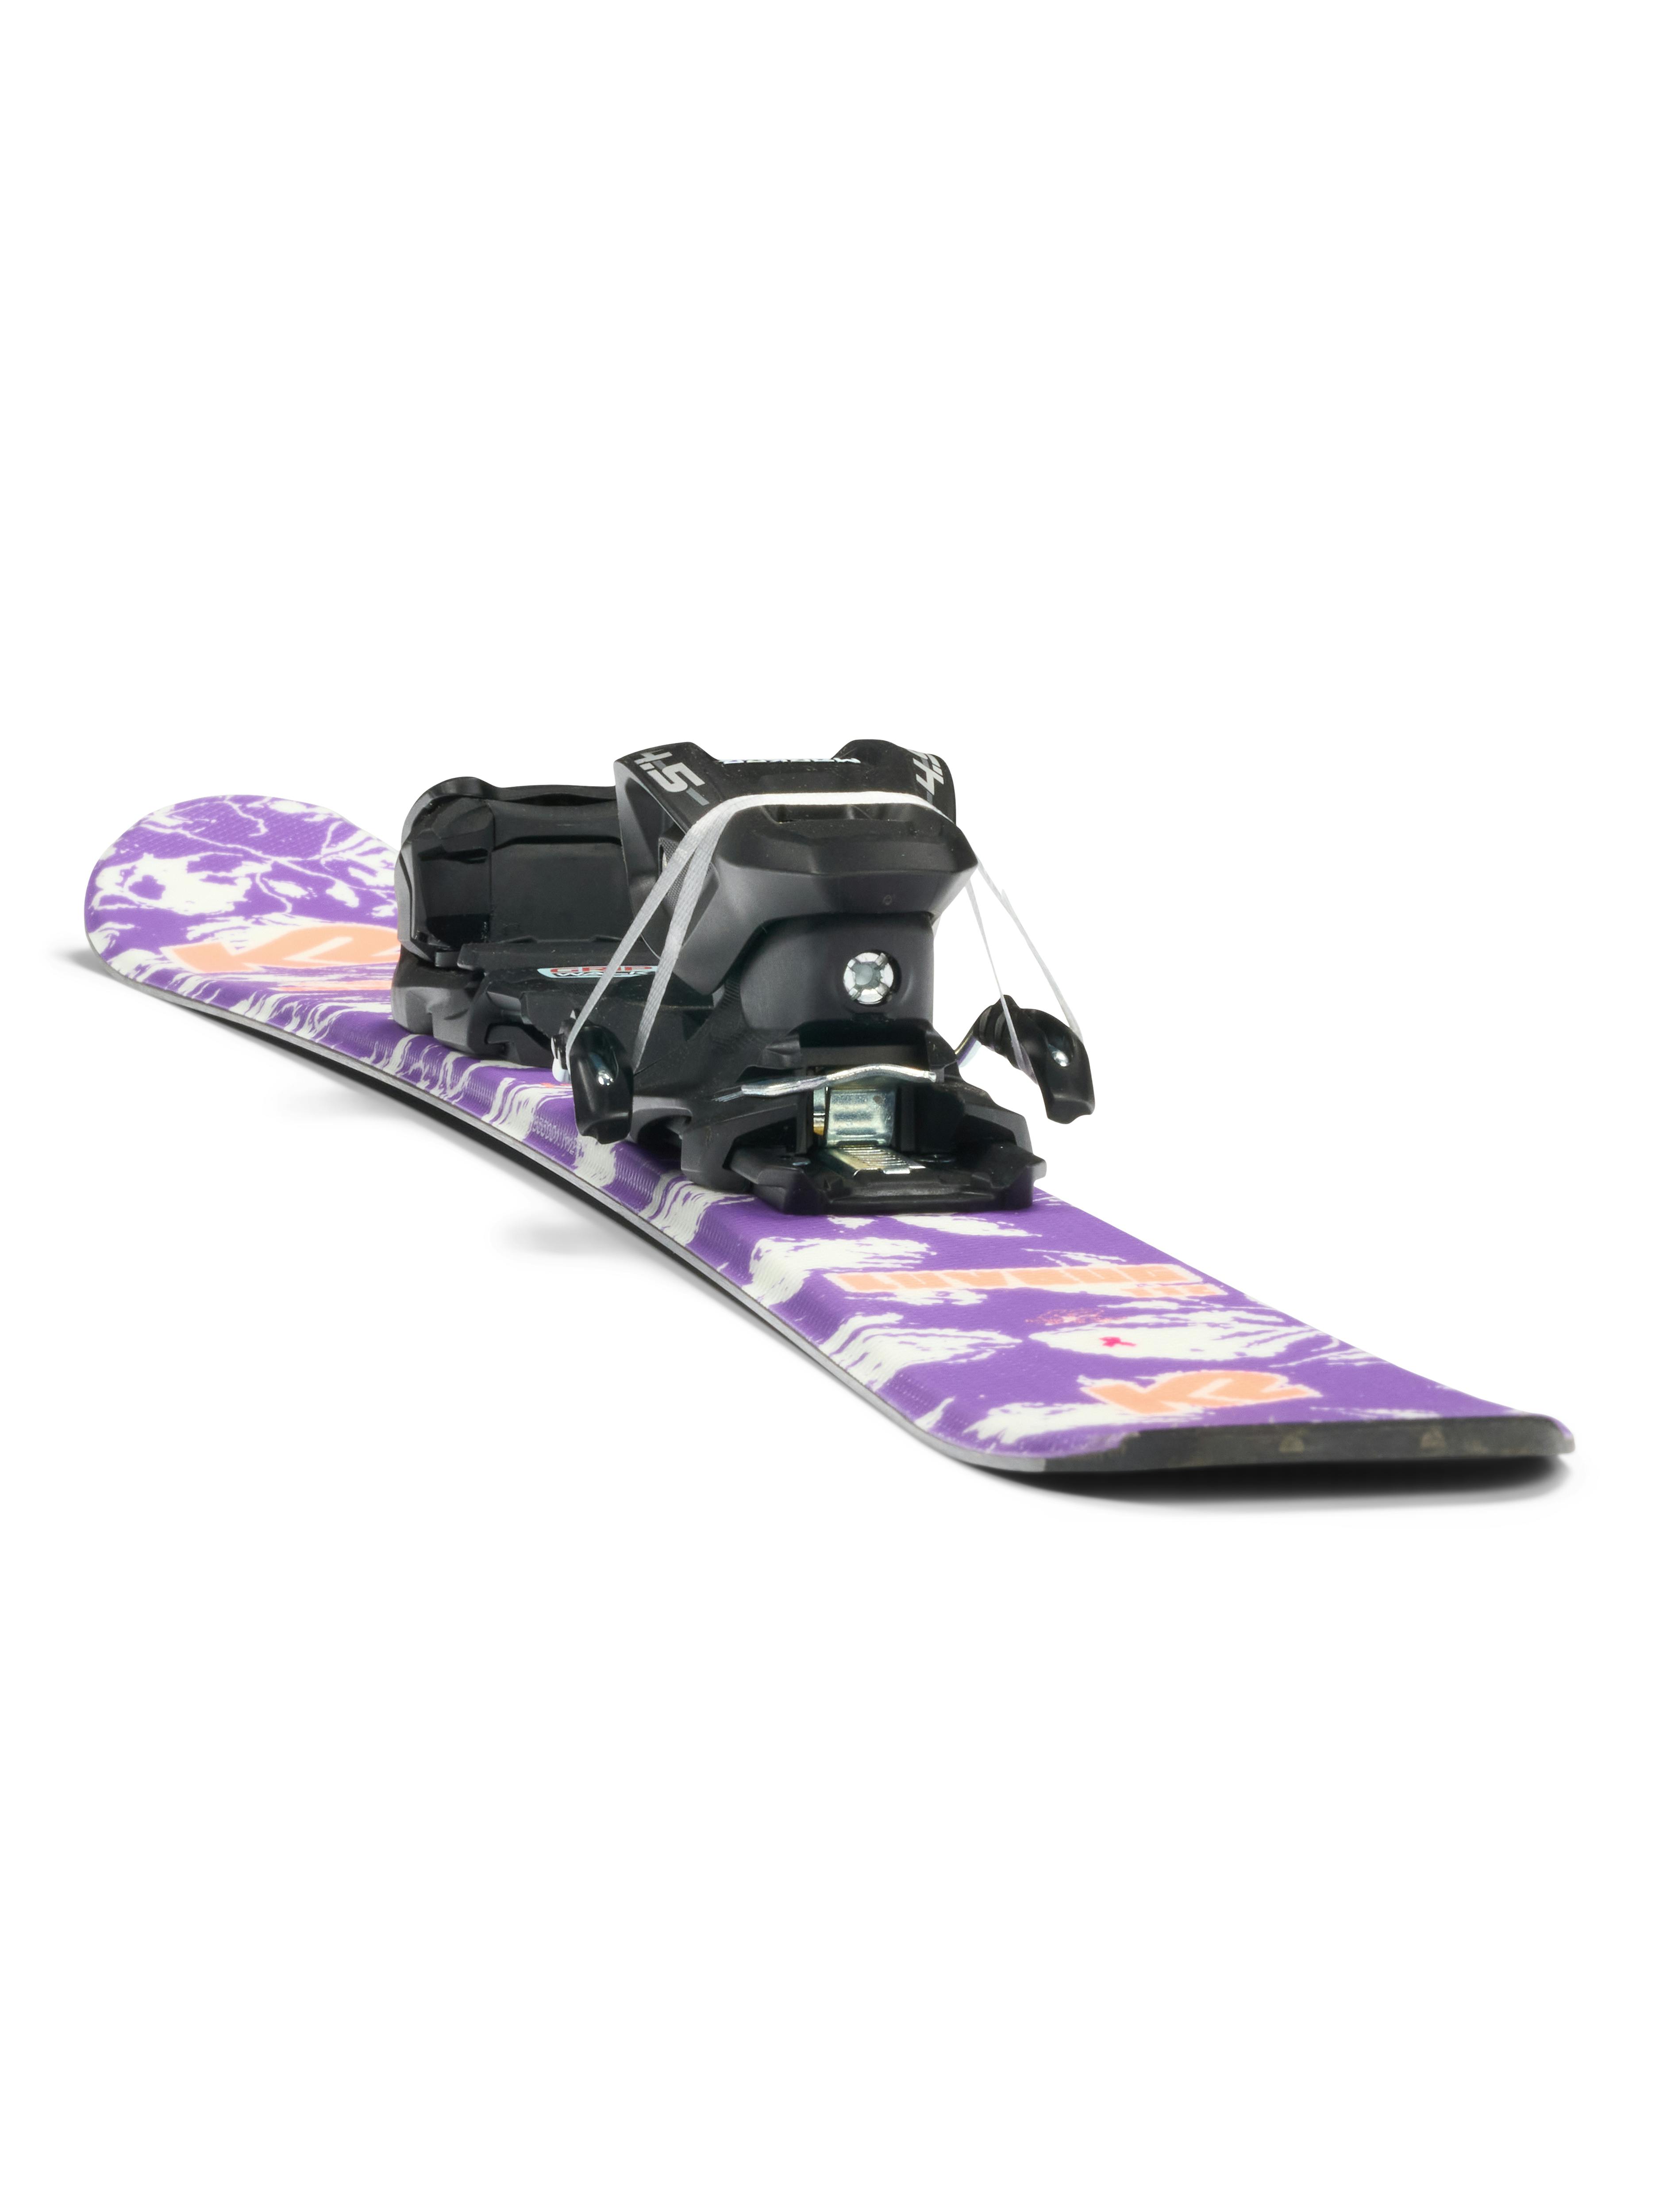 K2 Luv Bug Skis + Marker FDT 4.5 Bindings · Girls' · 2023